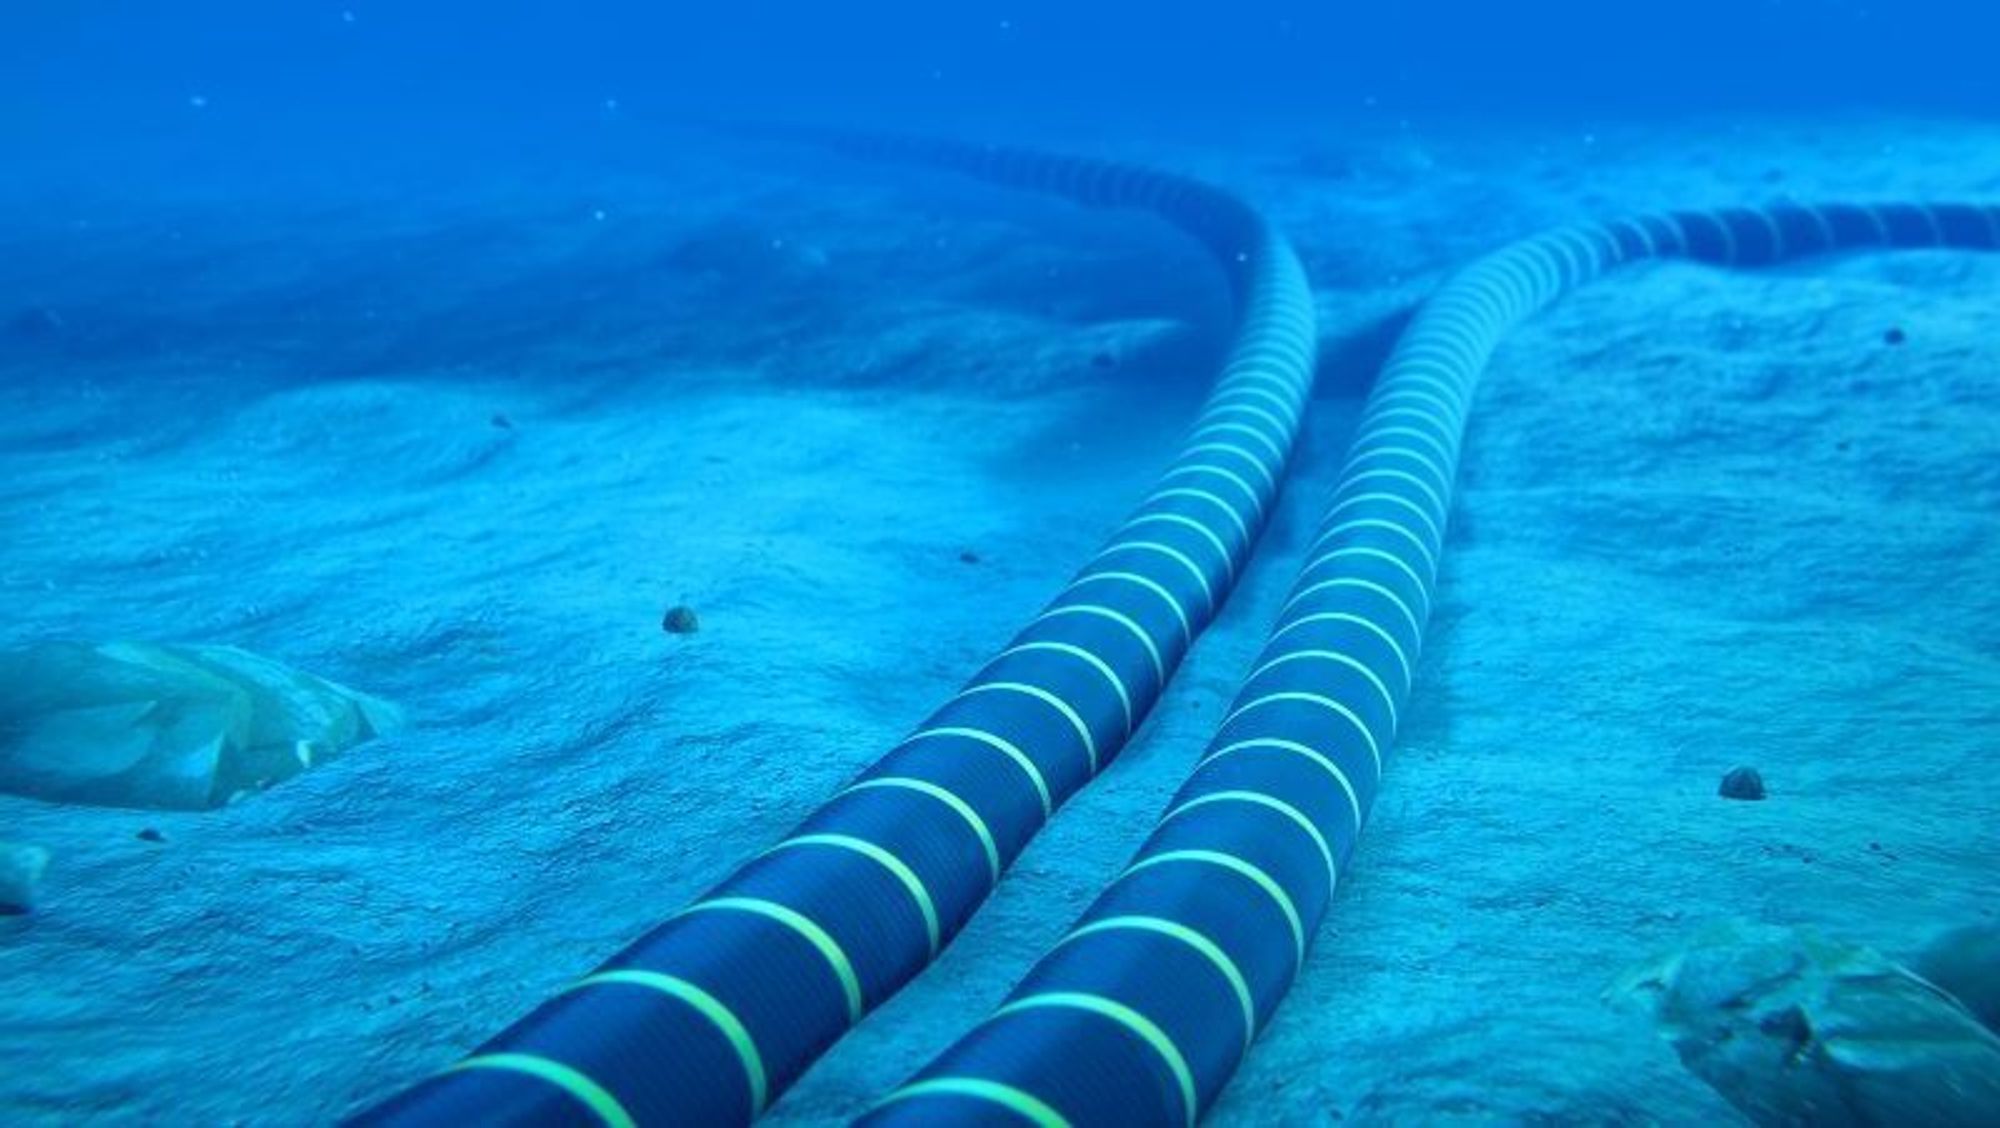 Den nye tiltakspakken fra regjeringen skal blant annet brukes til å utstyre undersjøiske fiberkabler med ny overvåkingsteknologi.